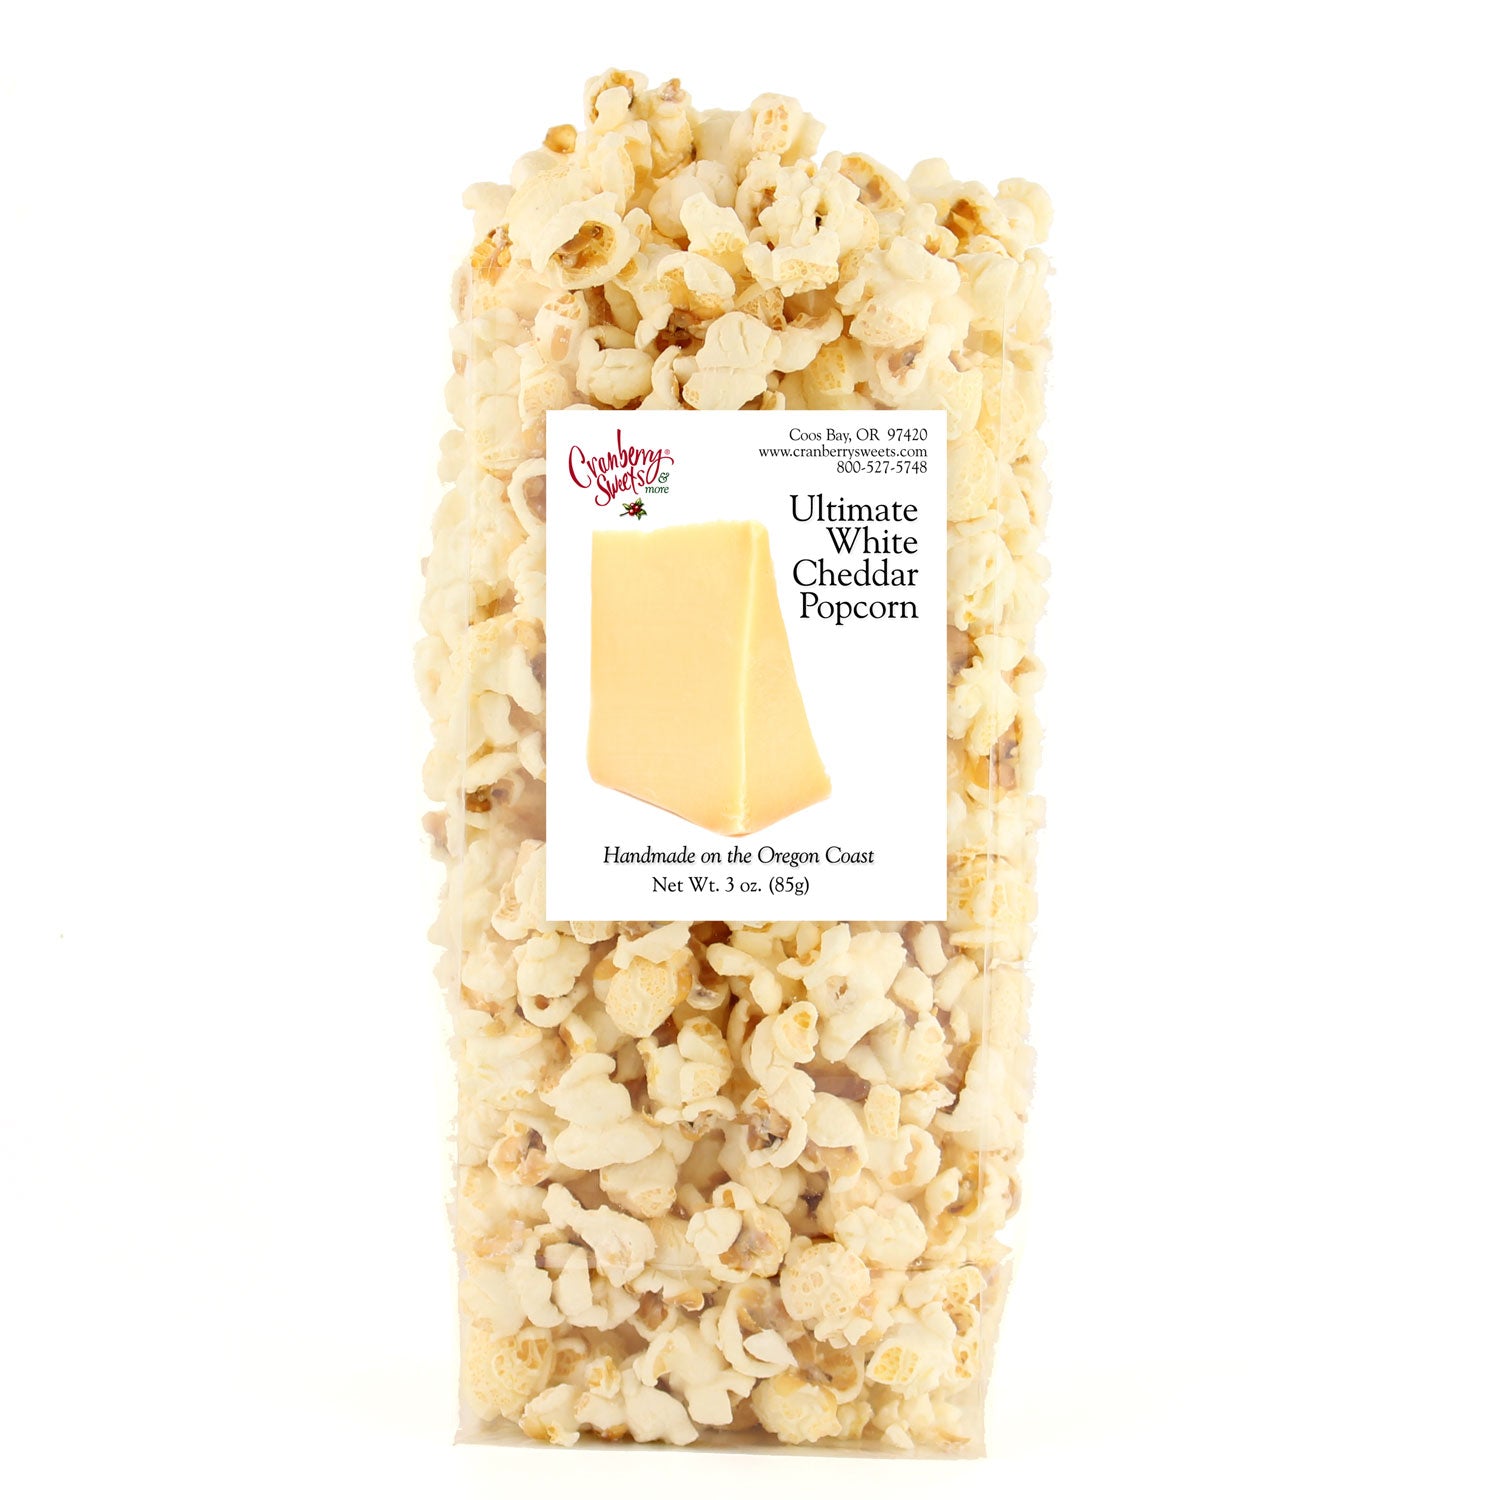 Ultimate White Cheddar Popcorn 4oz.